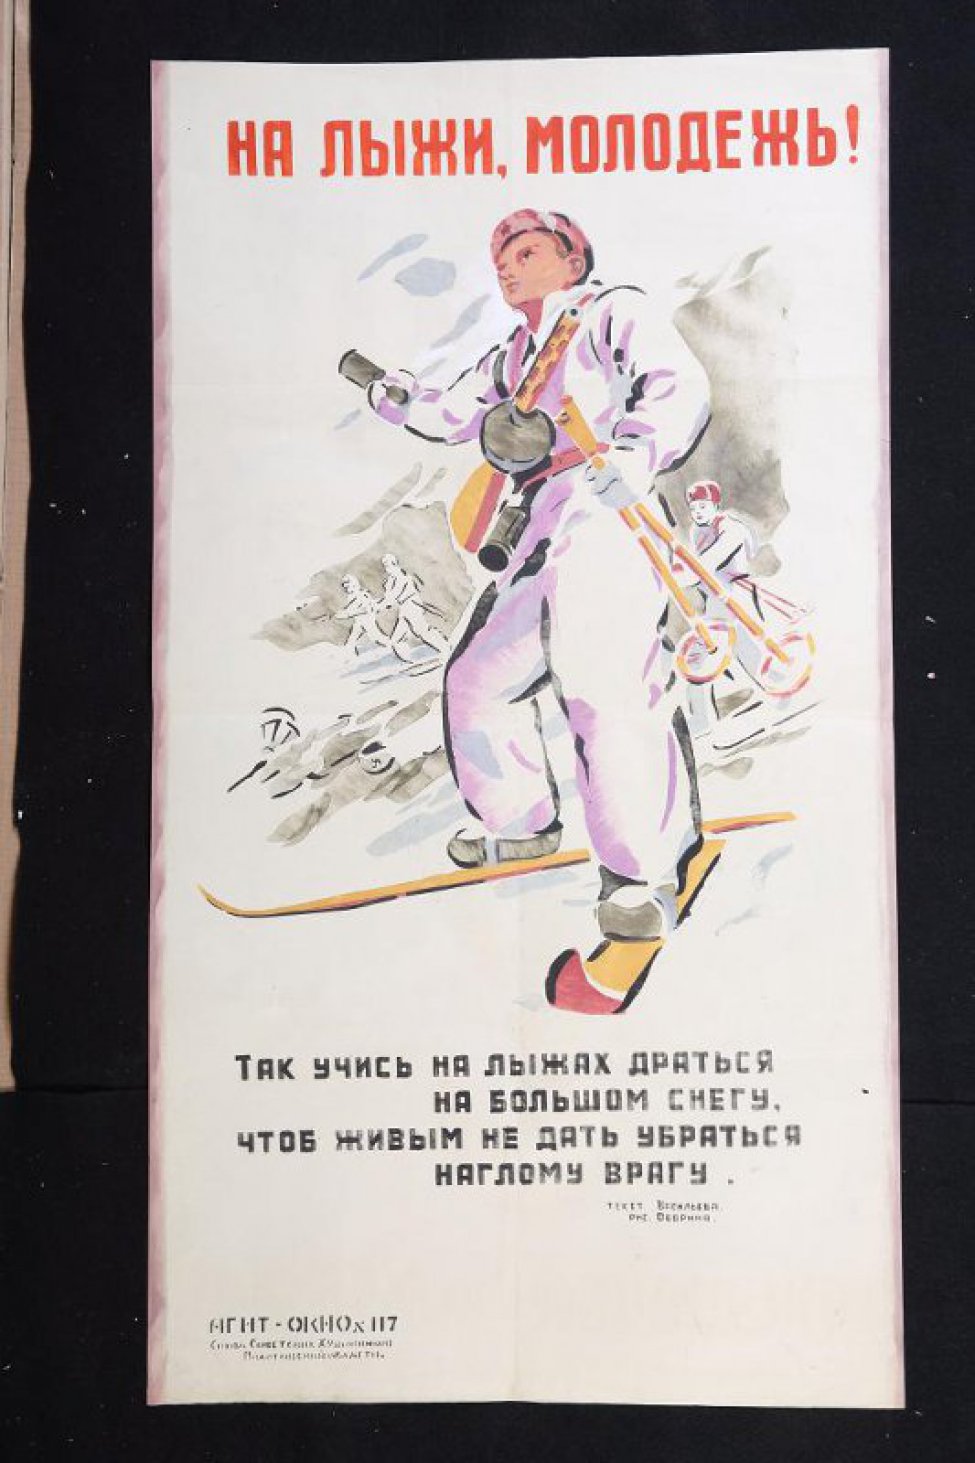 Изображено: советский боец в лыжном костюме с гранатой в руке на лыжах, за ним еще лыжники, текст: " так учись на лыжах драься на большом снегу, чтоб живым не дать убраться наглому врагу."